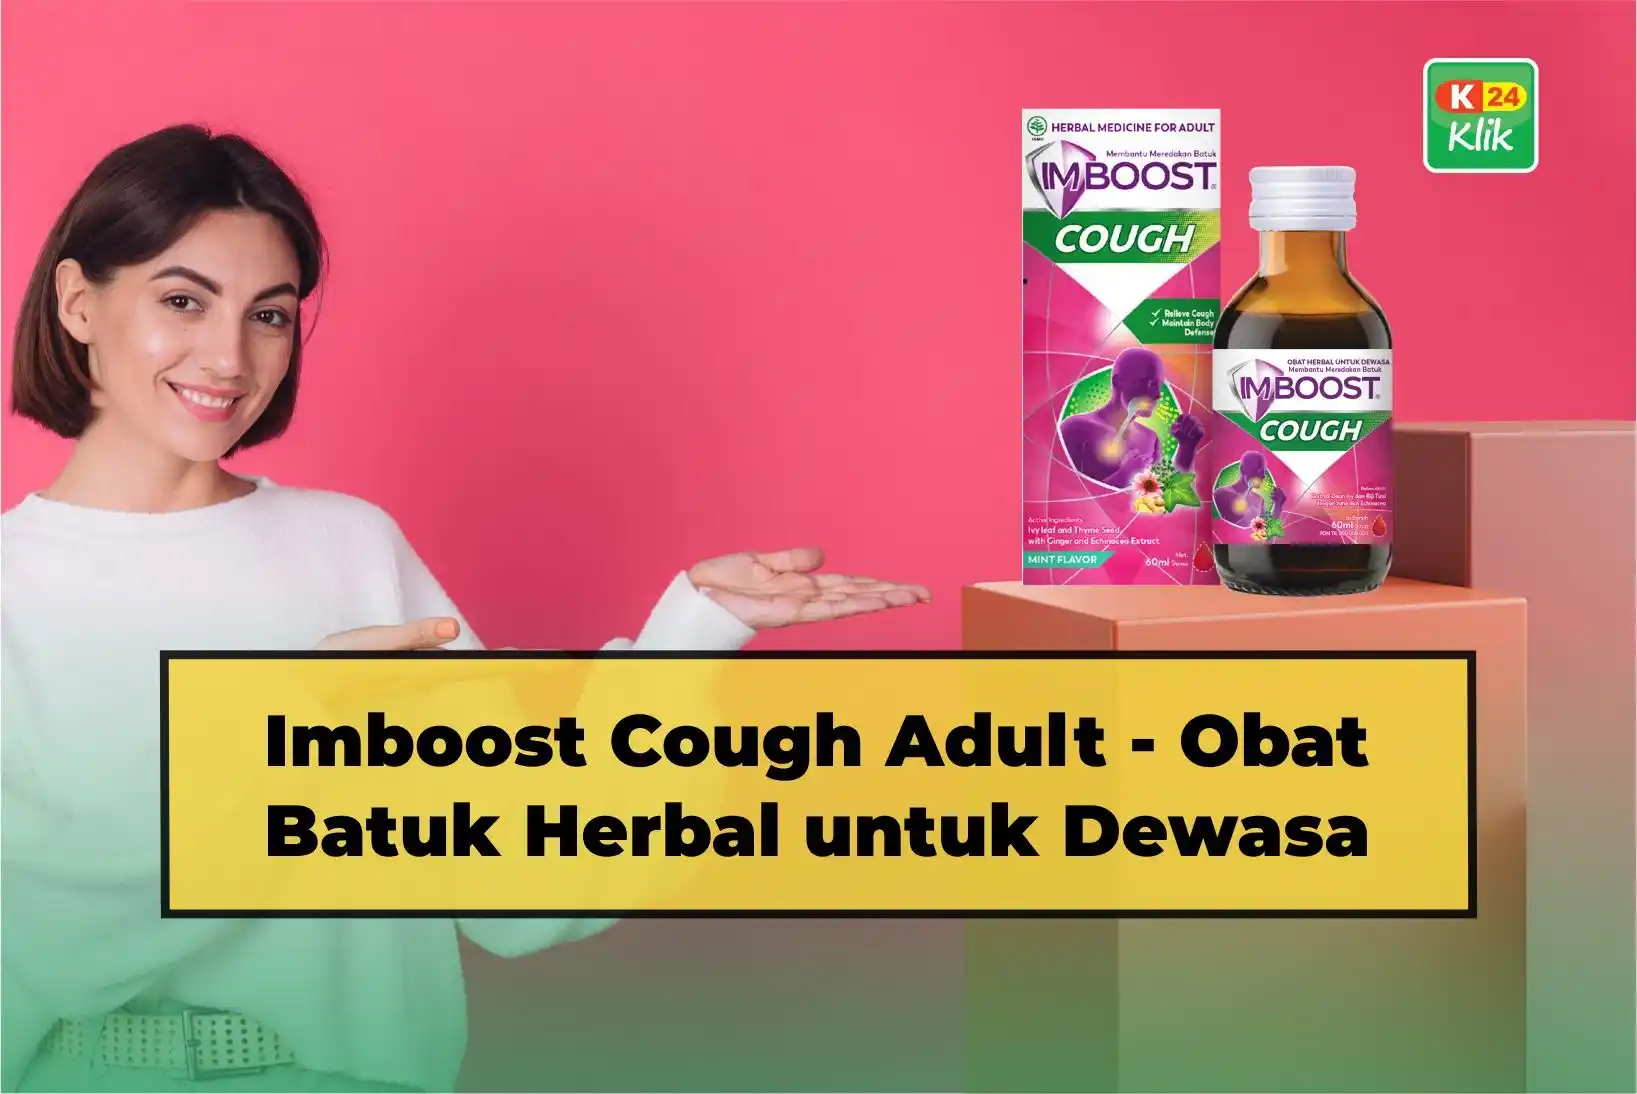 imboost cough adult obat batuk herbal dewasa